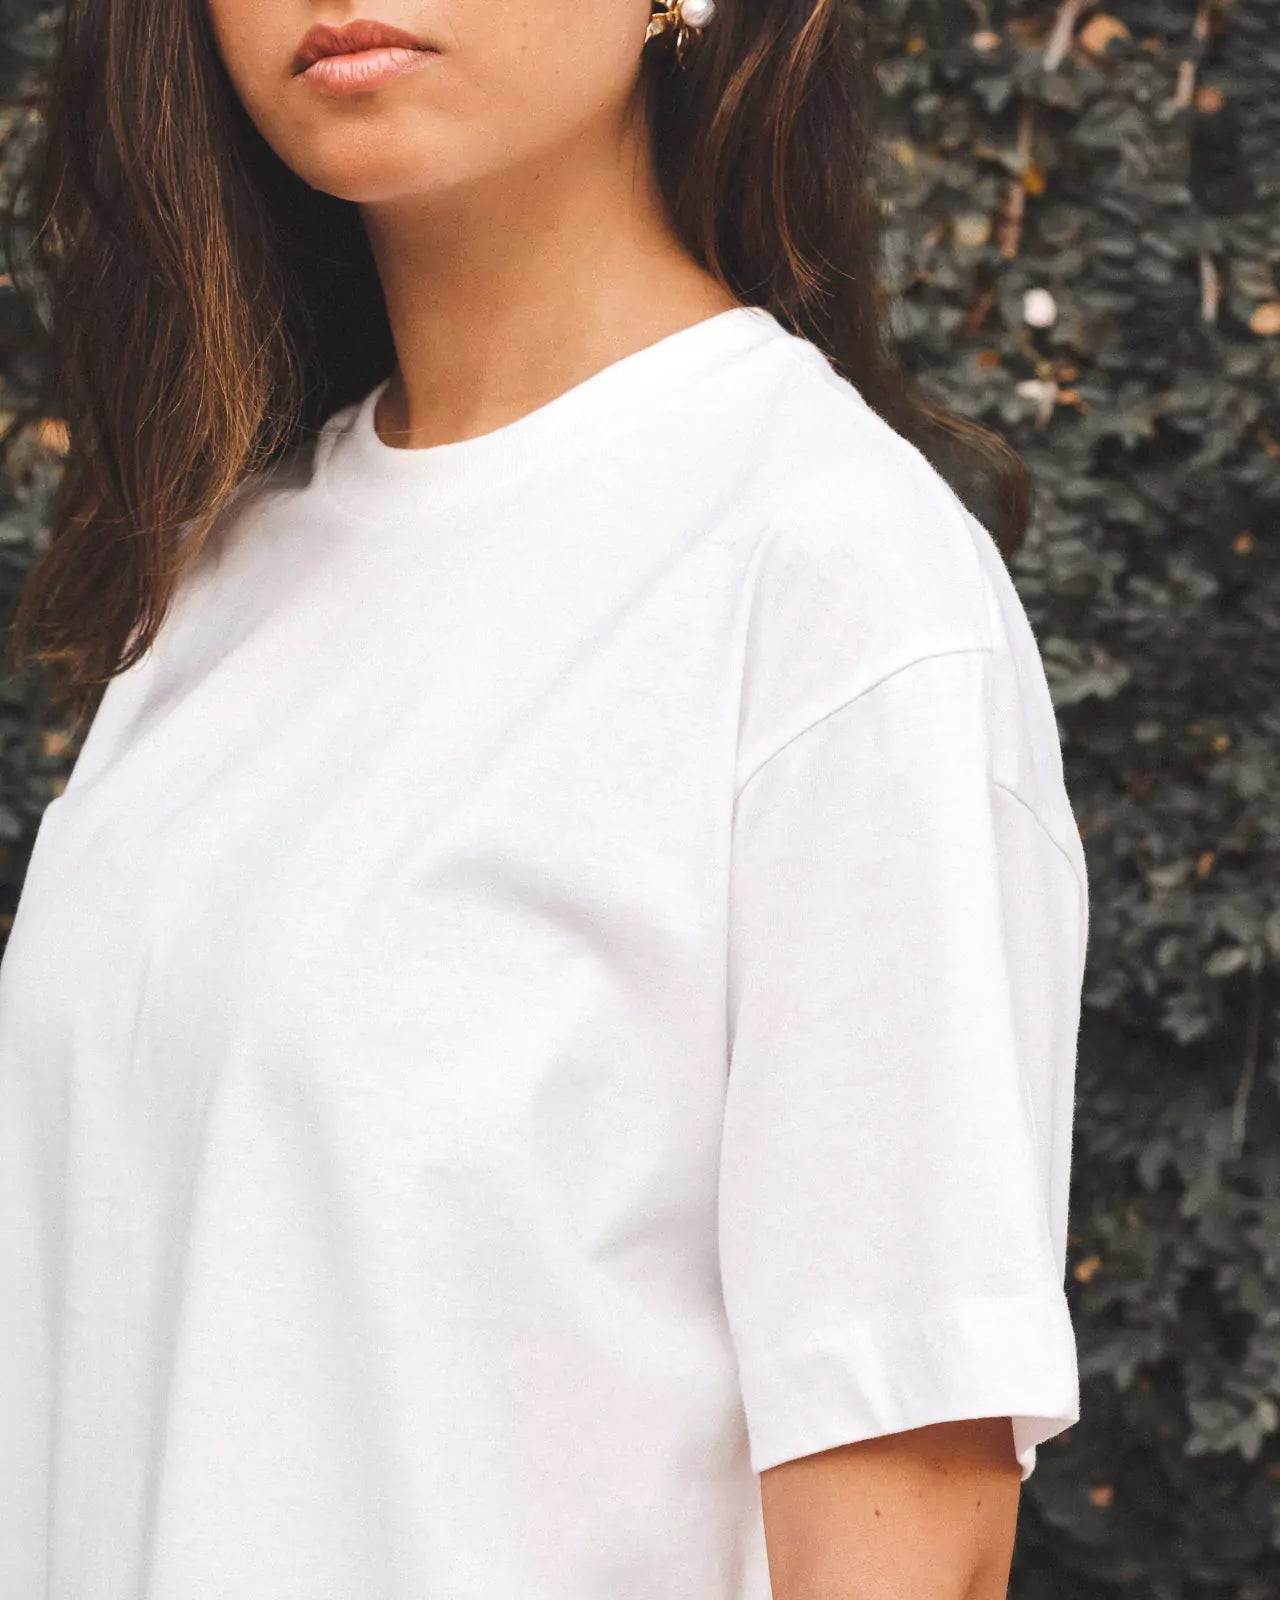 T-shirt Oversized de Algodão Orgânico Branca Off White. Compre online moda sustentável e atemporal na Minimadeia. Roupas femininas estilosas, básicas e sustentáveis. Foto produto 04